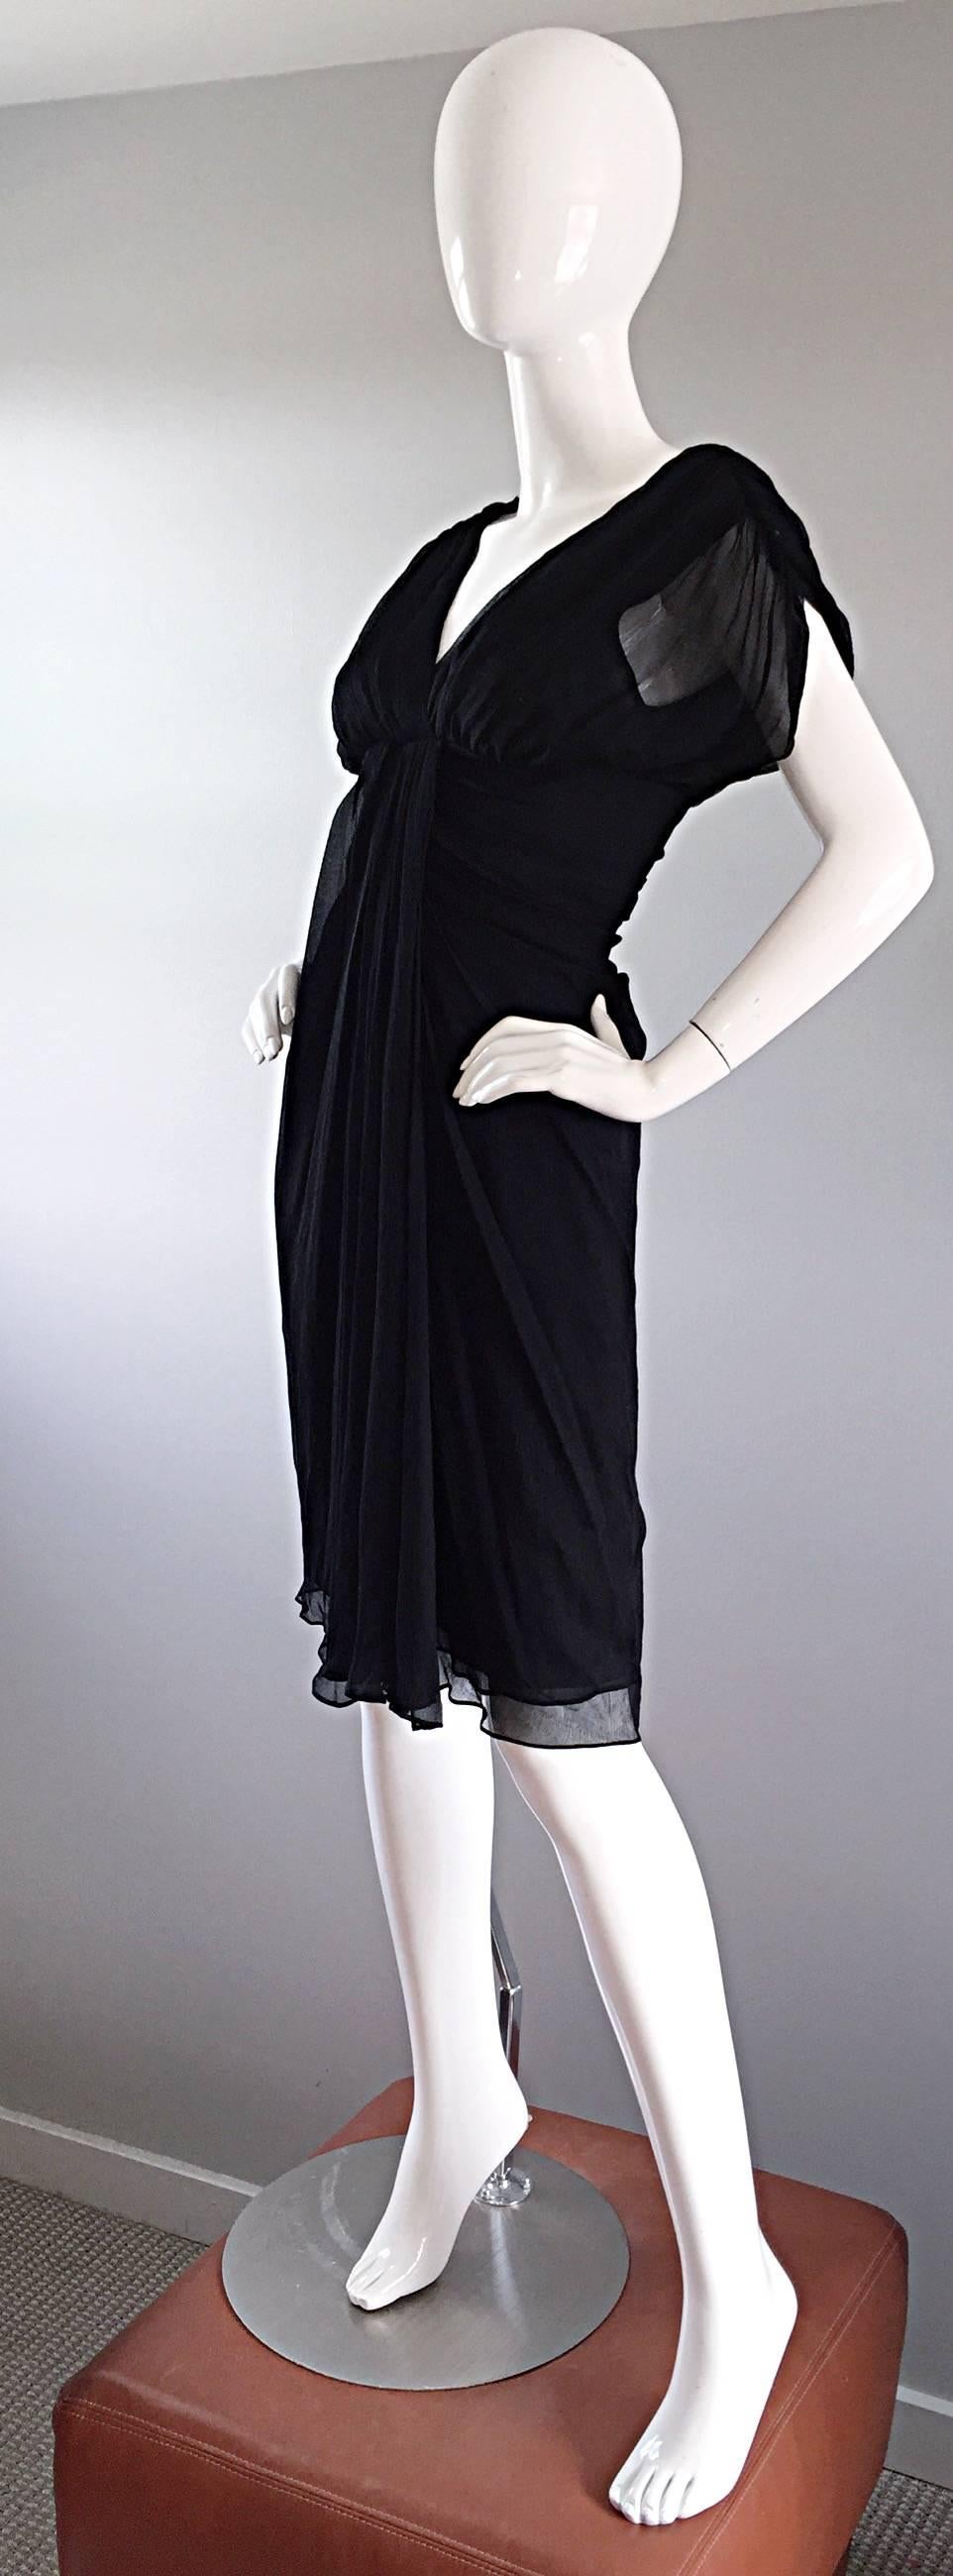 diane von furstenberg black dress